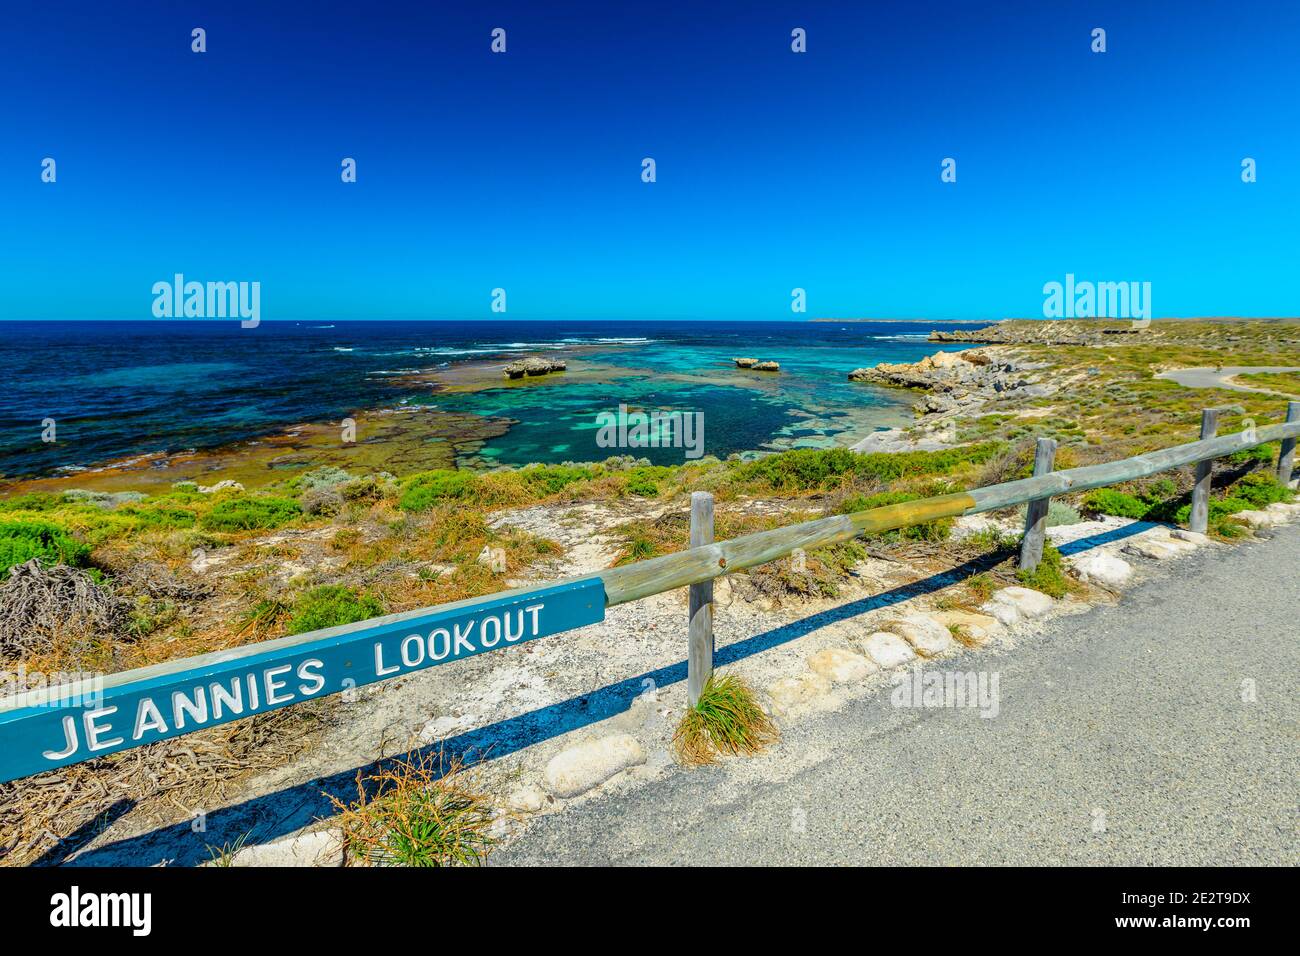 Panneau Jeannies Lookout à Rottnest Island, en Australie occidentale. Vue panoramique sur la mer tropicale turquoise et les rochers accidentés. Tourisme près de Perth. Banque D'Images